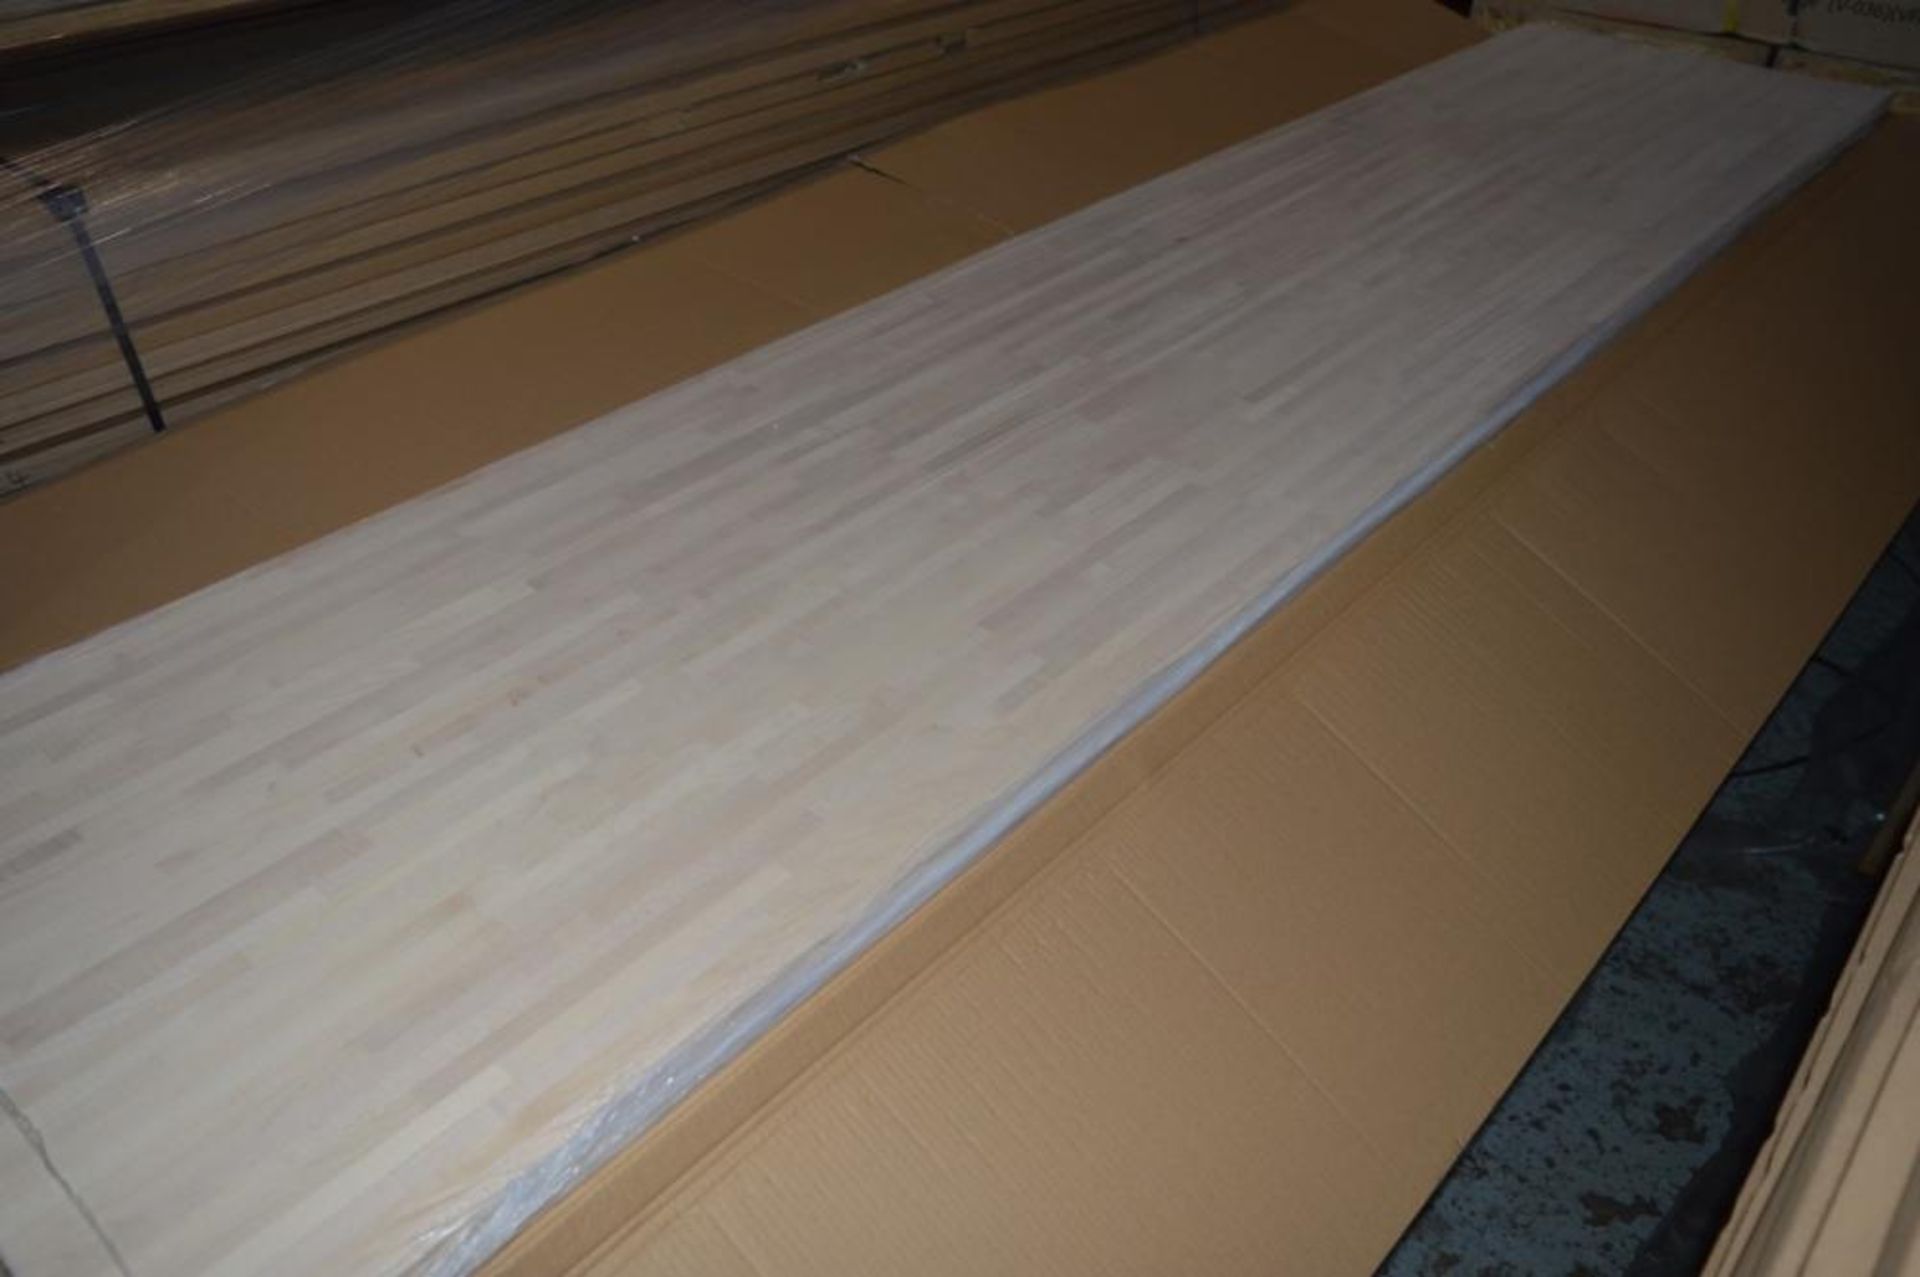 1 x Solid Wood Kitchen Worktop - EUROPEAN MAPLE - Maple Blockwood Kitchen Worktop - Size: 4000 x 650 - Image 5 of 5